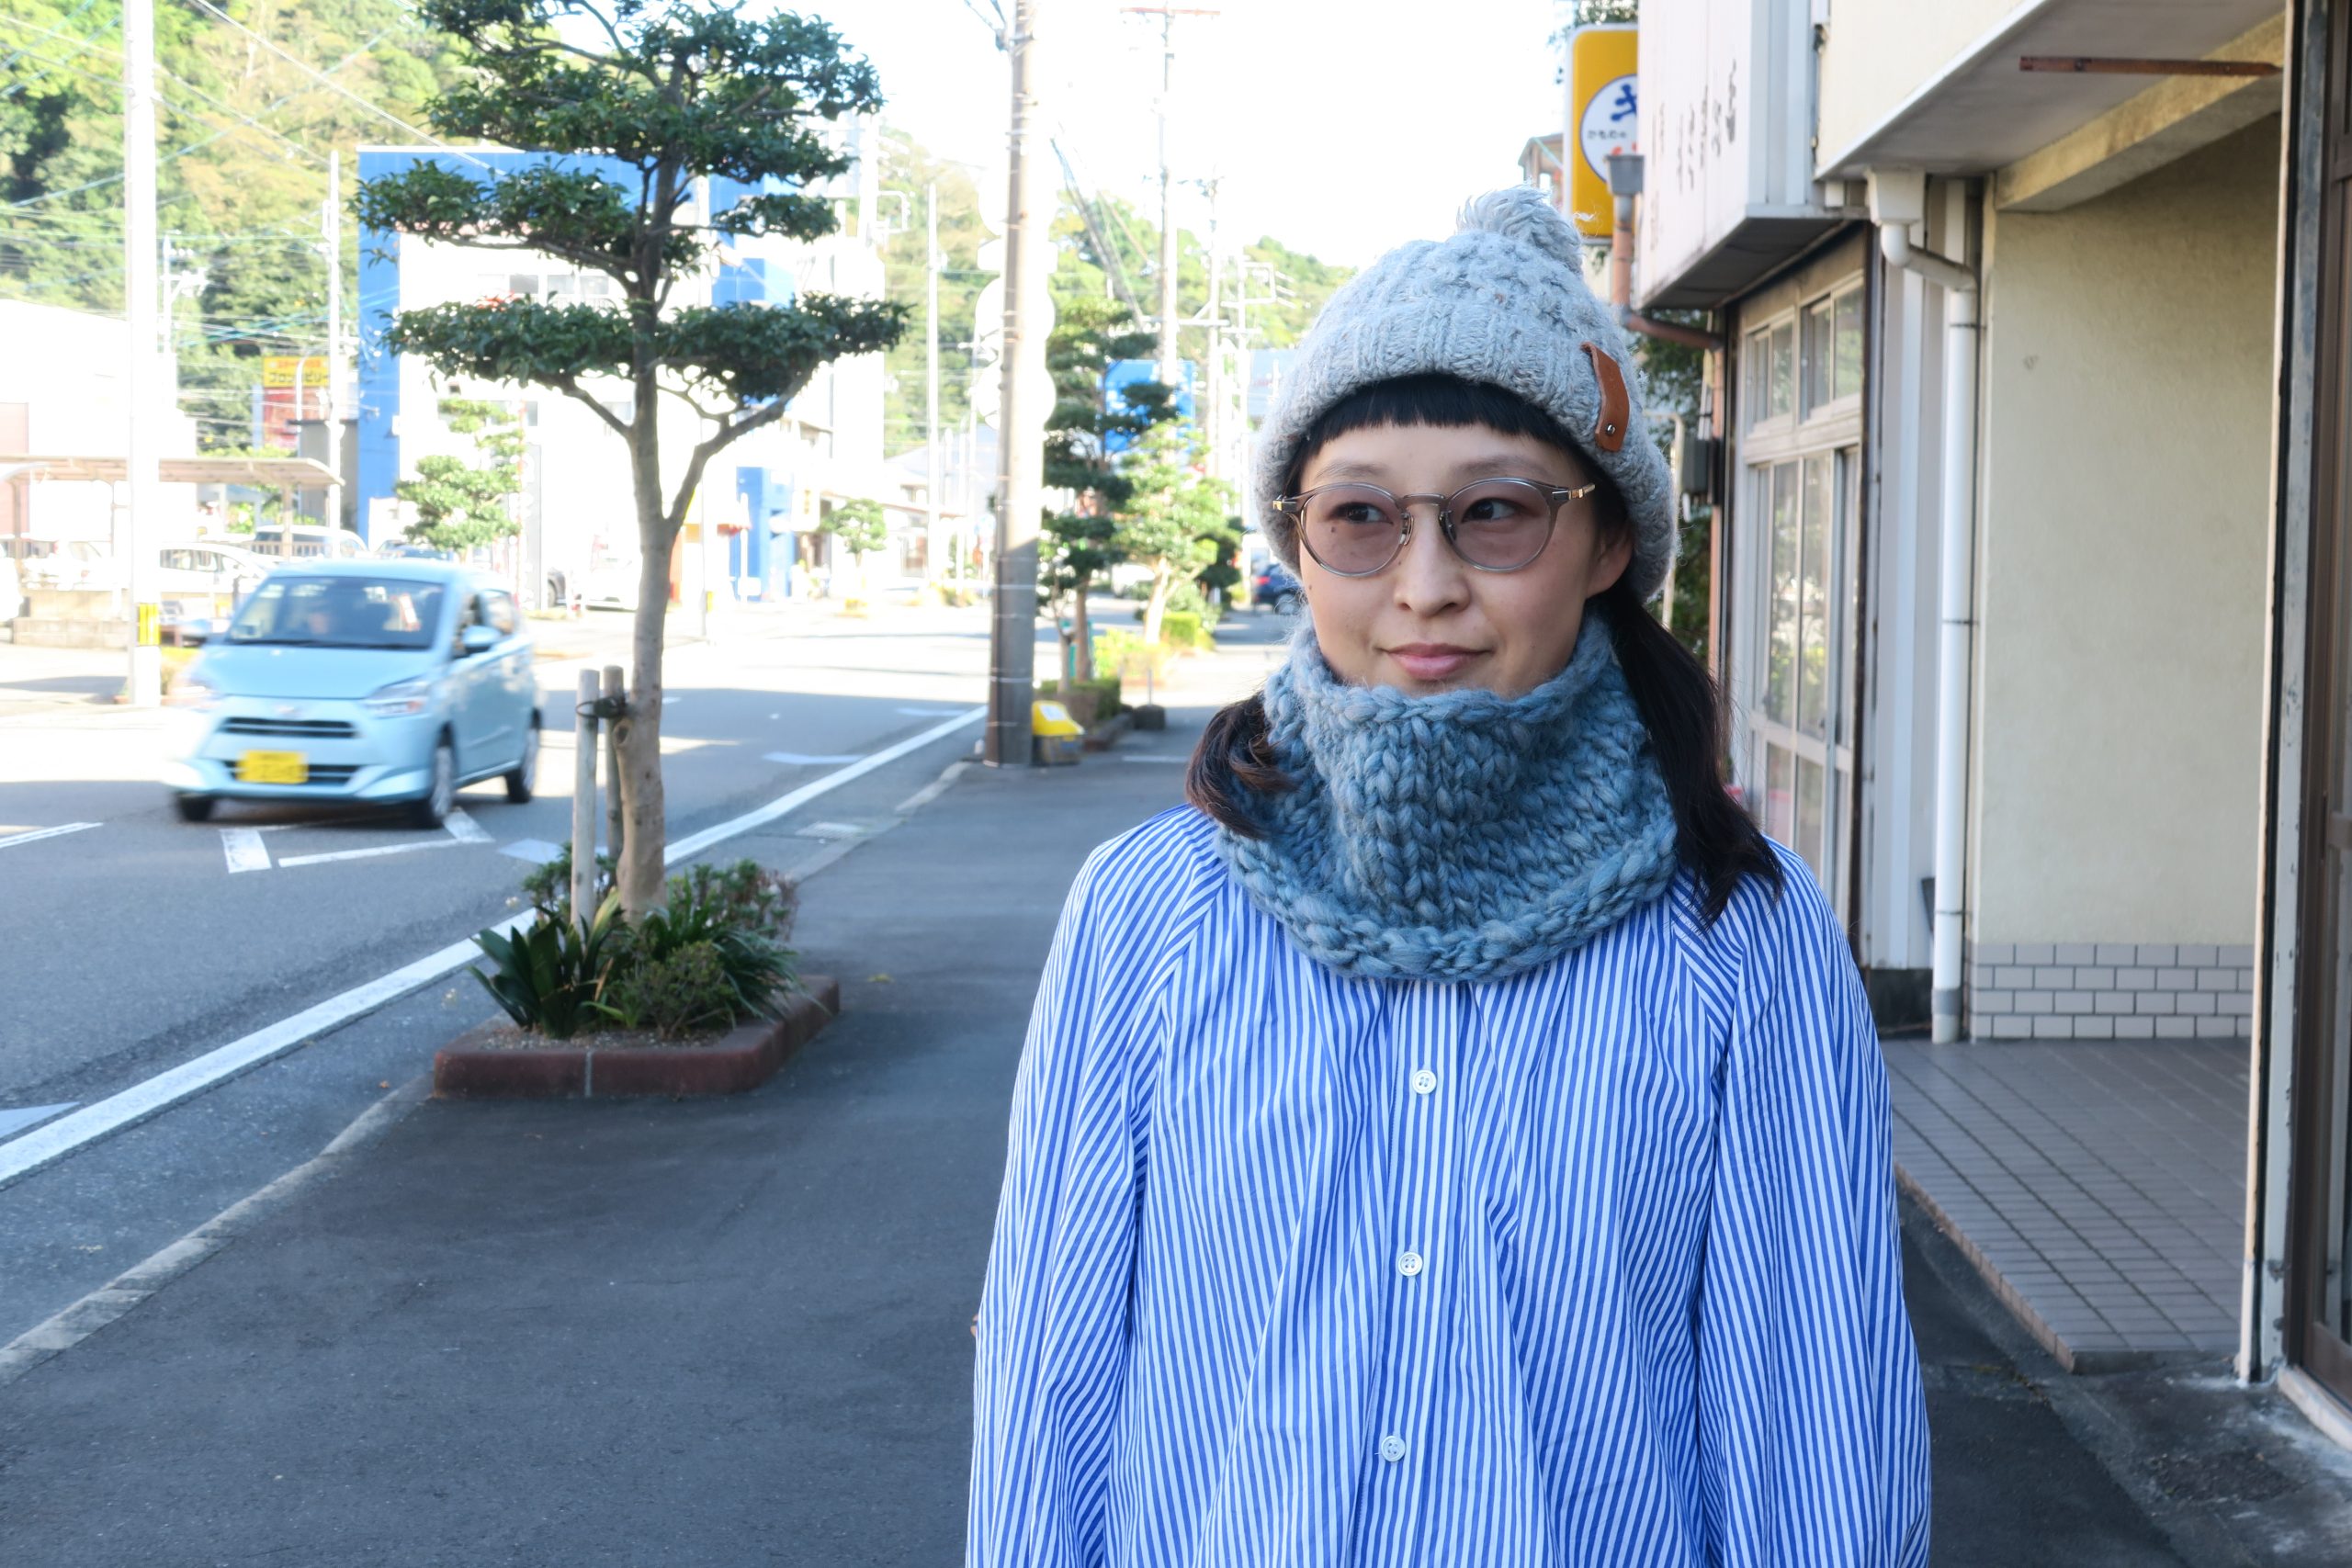 【イベント終了】秋山毛糸店ワークショップ「冬の贈り物。輪編みで暖かネックウォーマー」